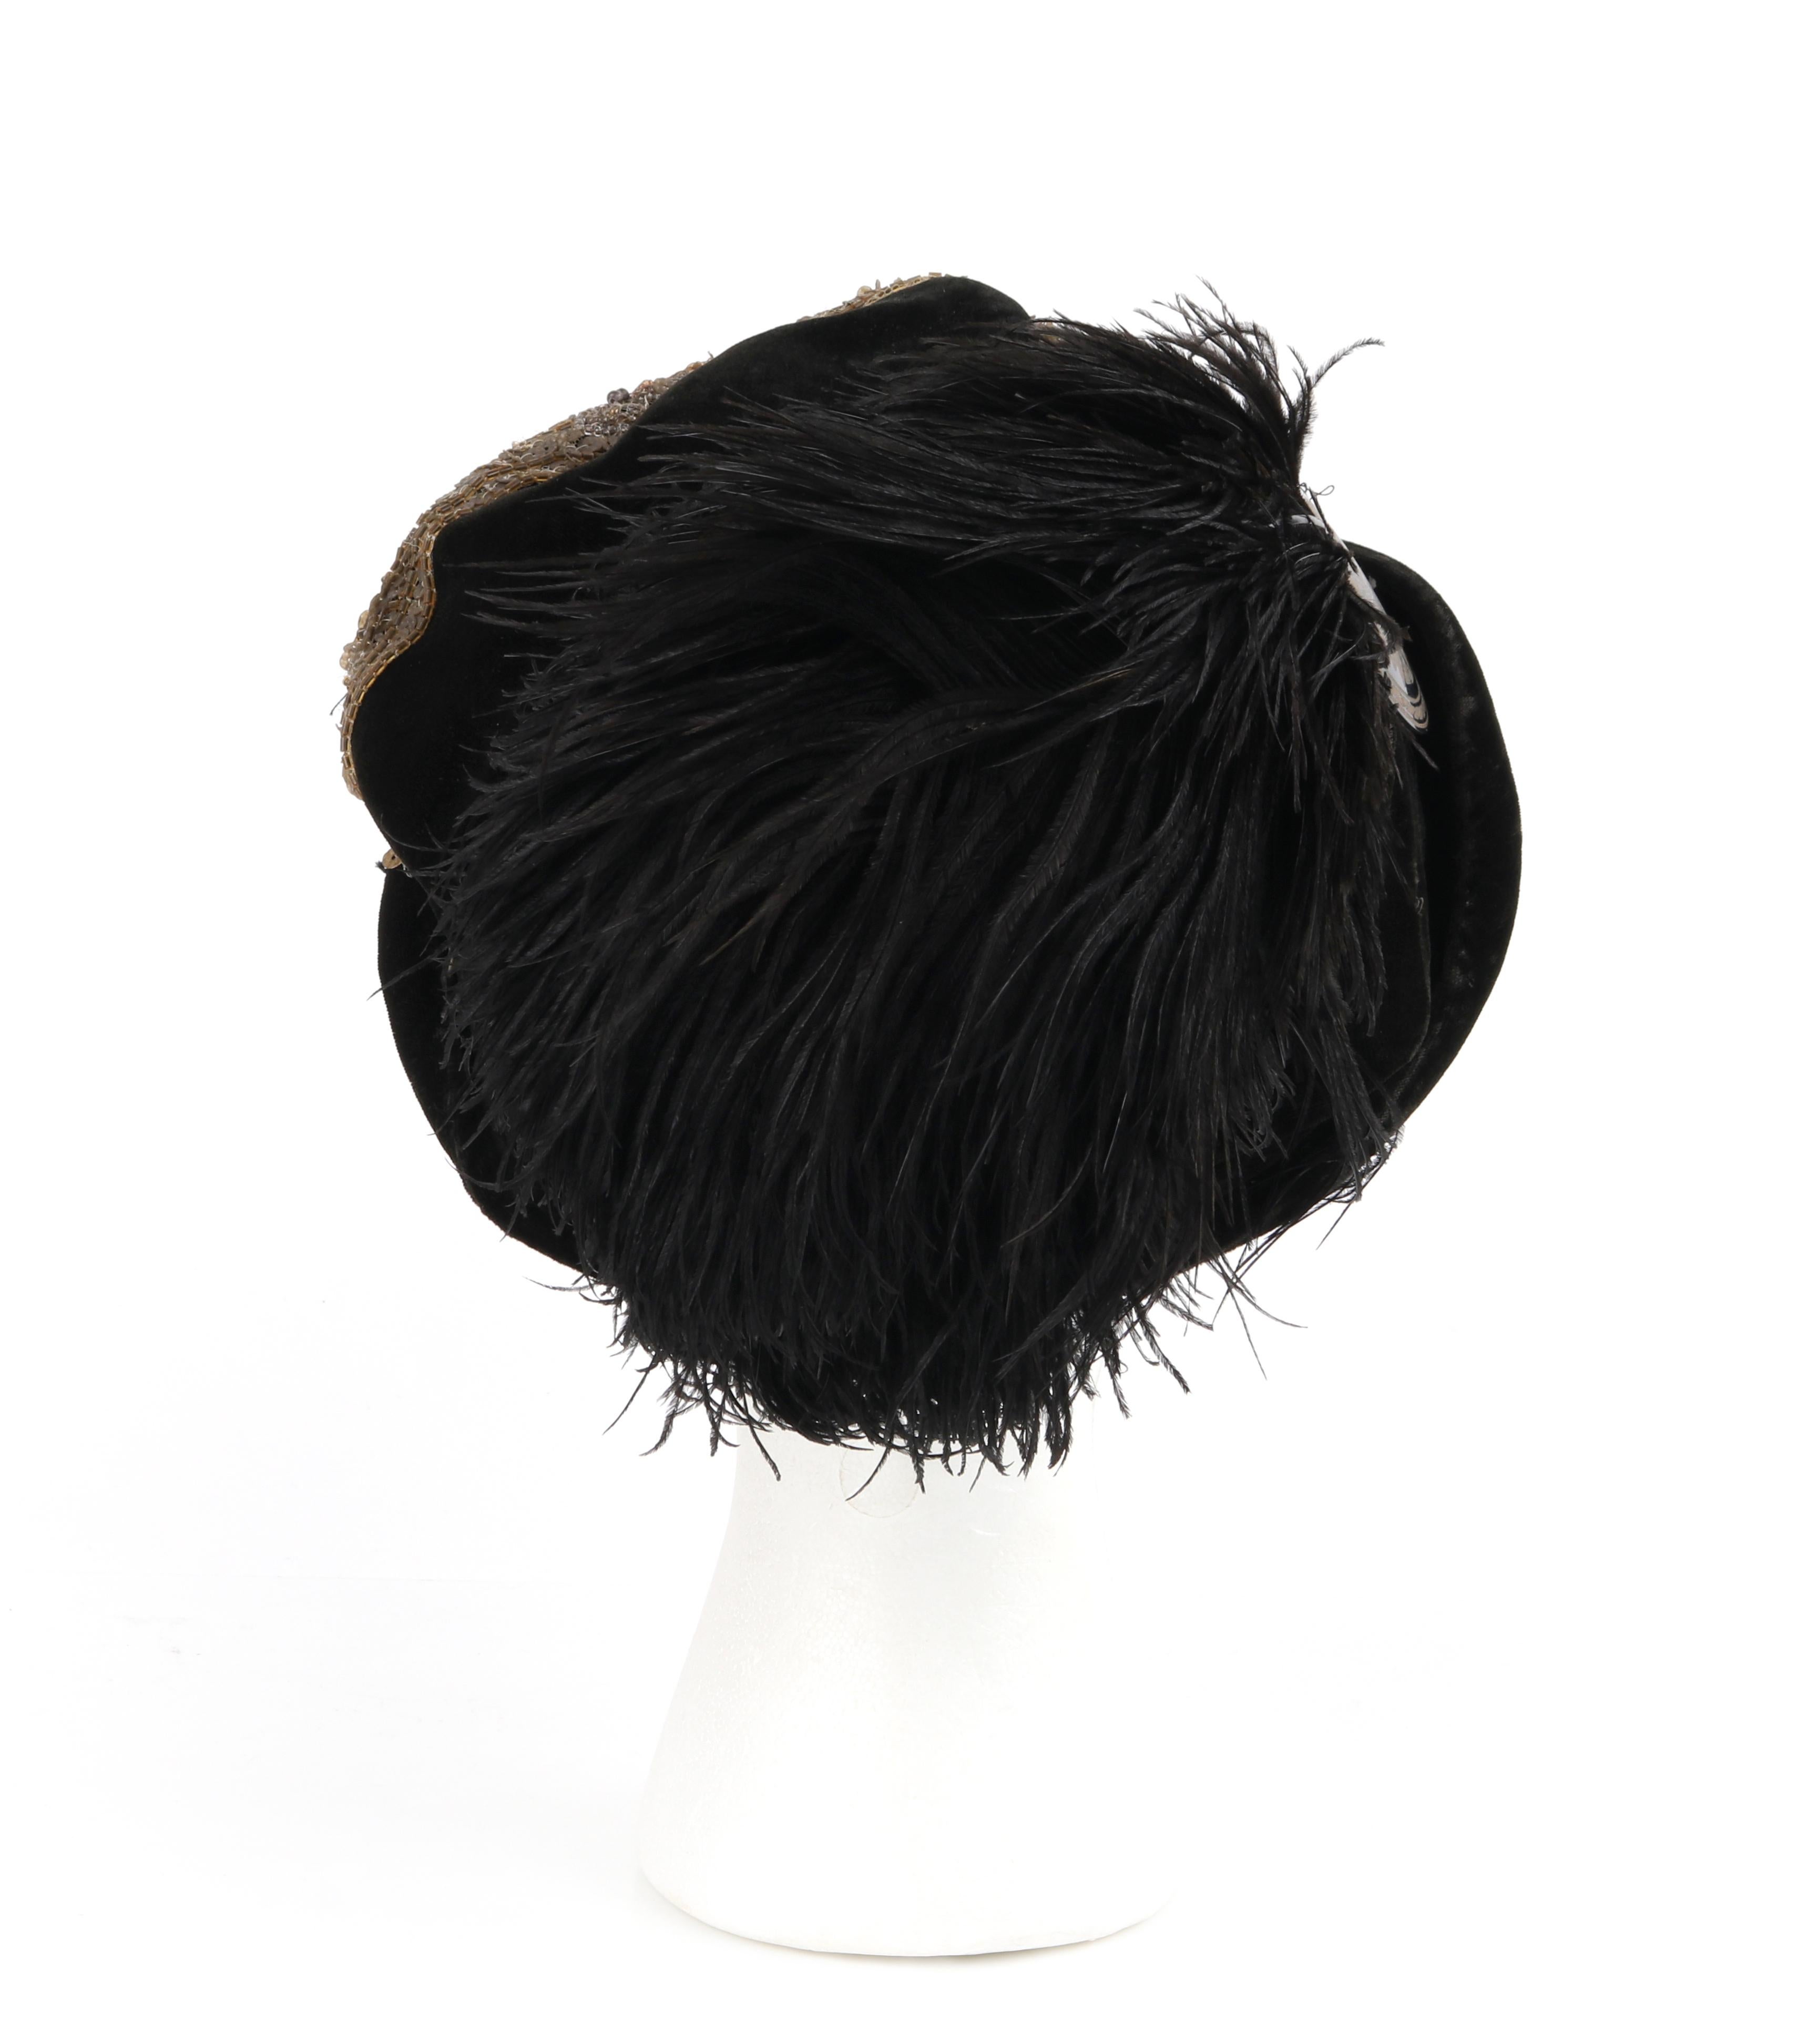 ostrich hat